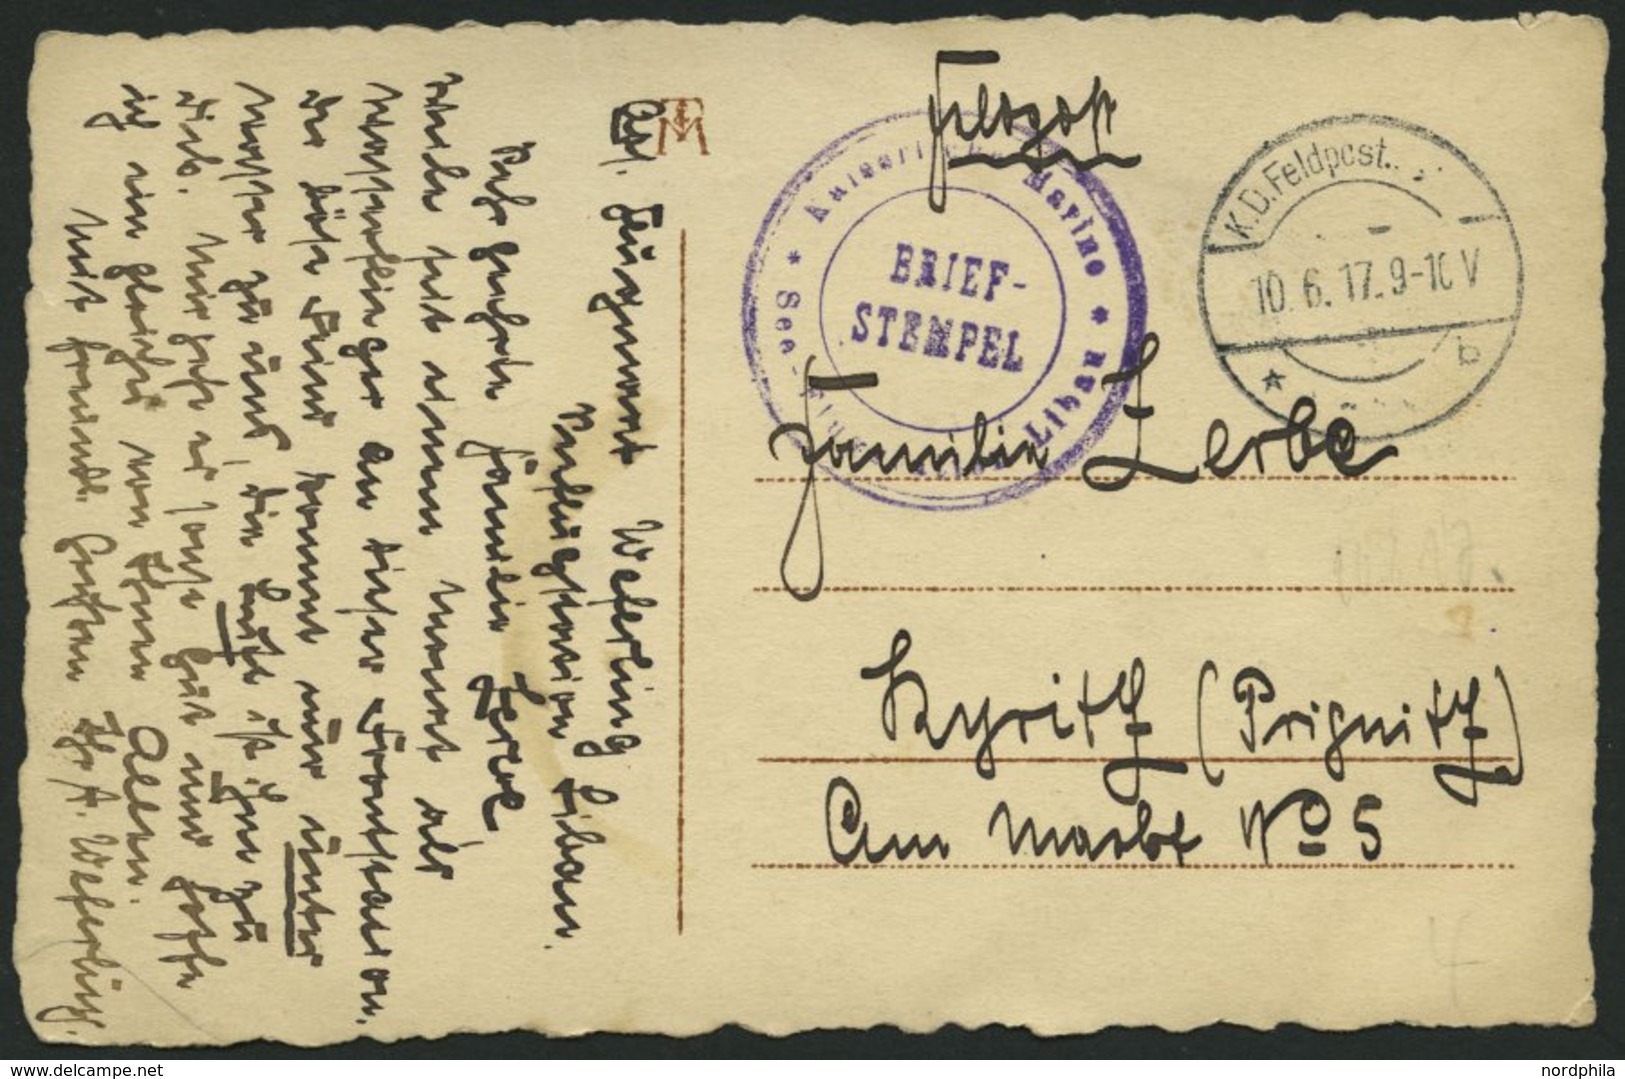 FELDPOST I.WK 1917, Feldpost-Ansichtskarte (Flieger Adolf Weferling) Mit Violettem Briefstempel KAISERLICHE MARINE - SEE - Usati